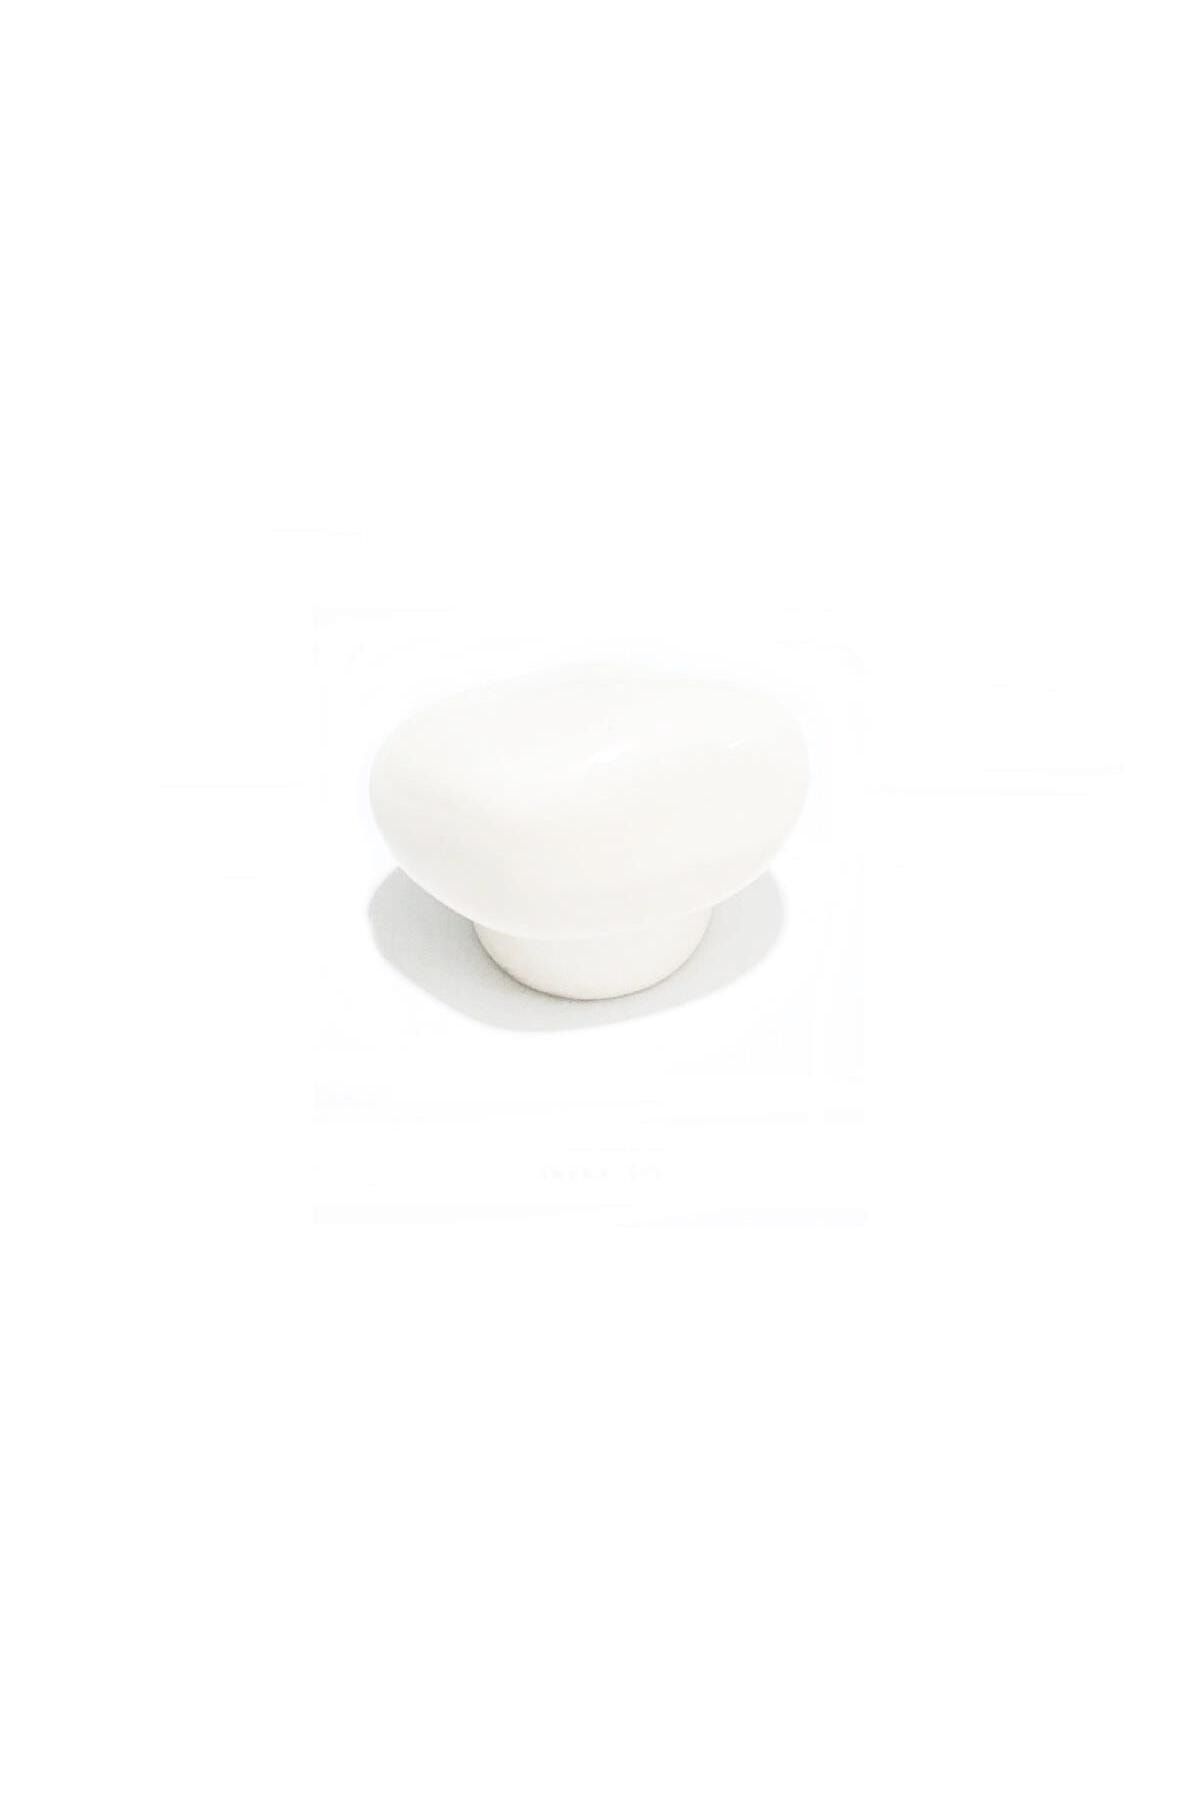 EYM Porselen Beyaz Taş Düğme Tek Vidalı Mobilya Dolap Kulp